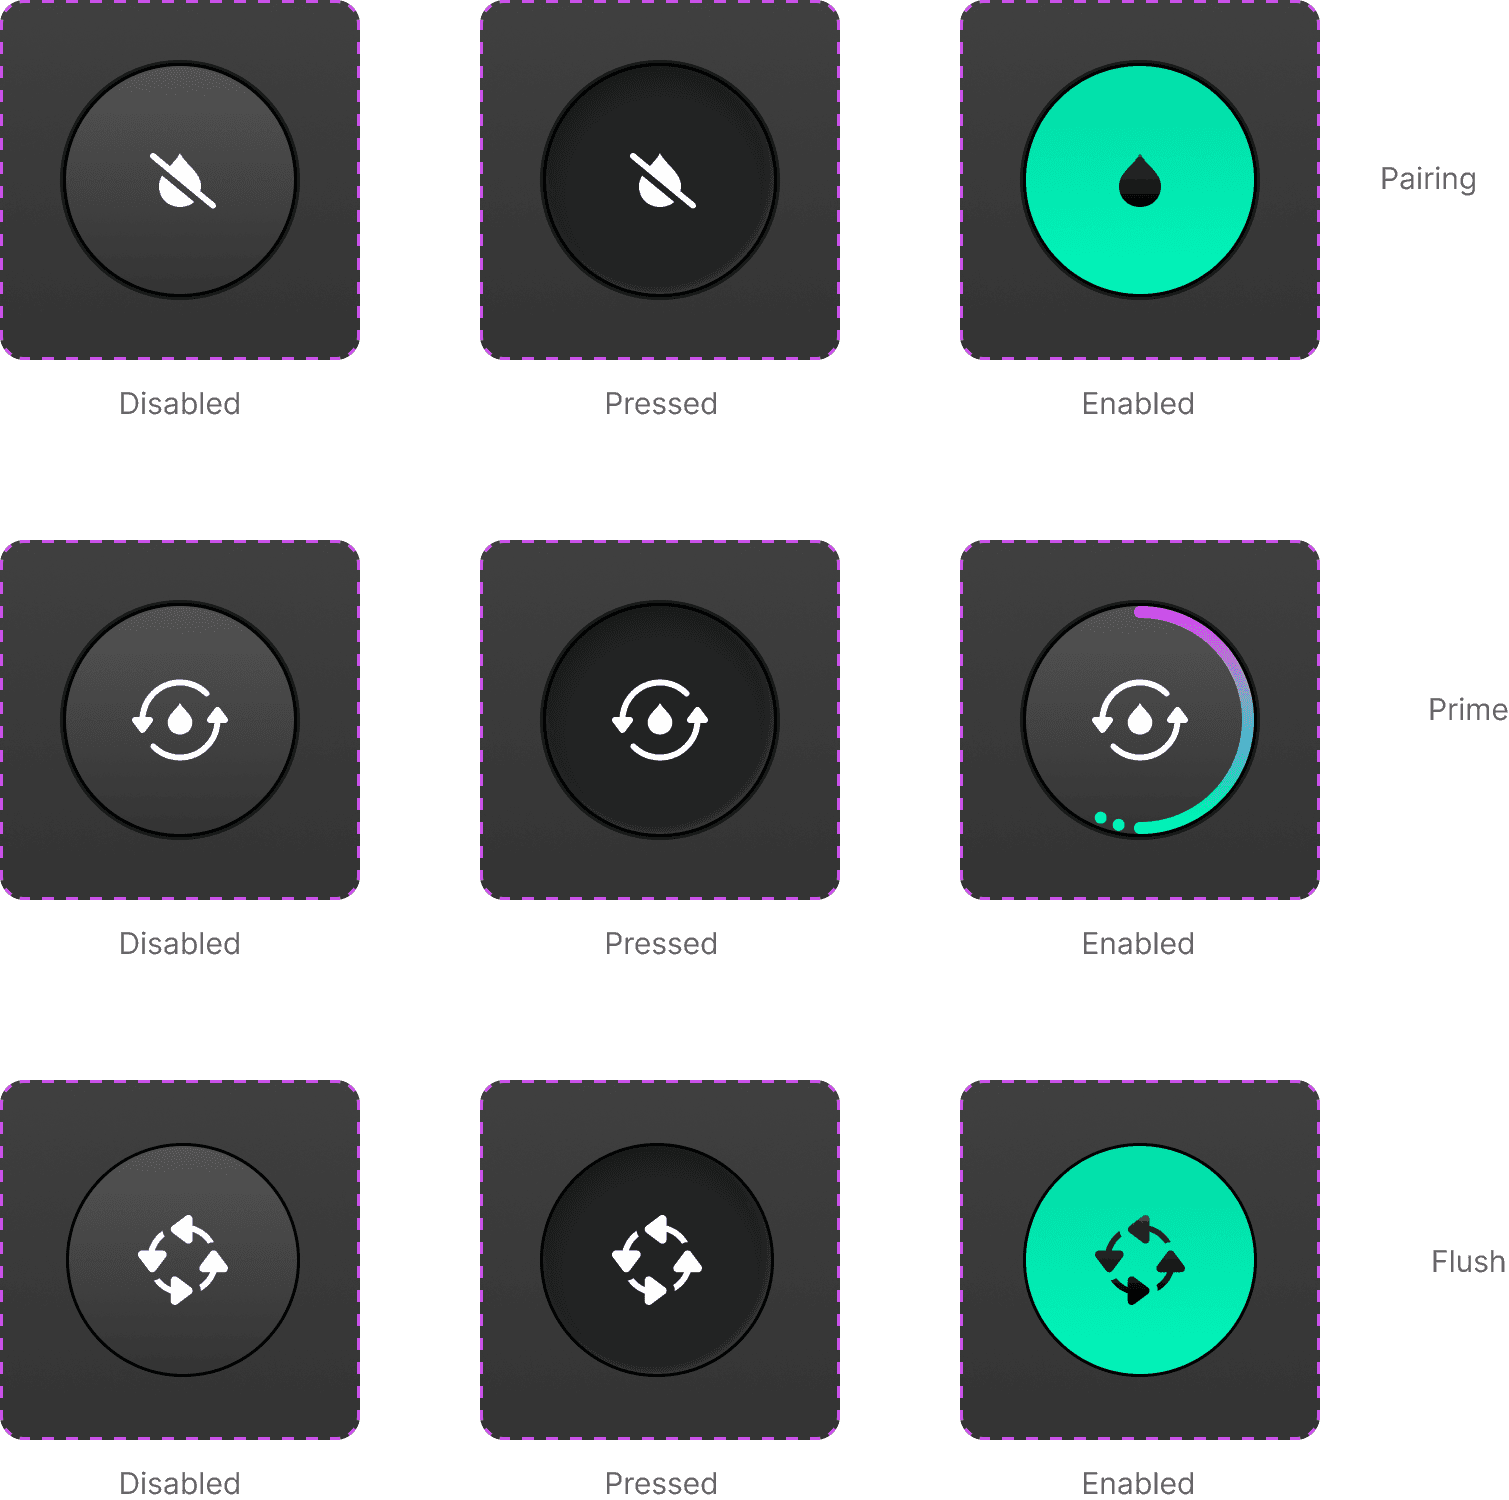 Uddrag, der viser ikoner og knapper fra designsystemet til en ultralydsskærer.